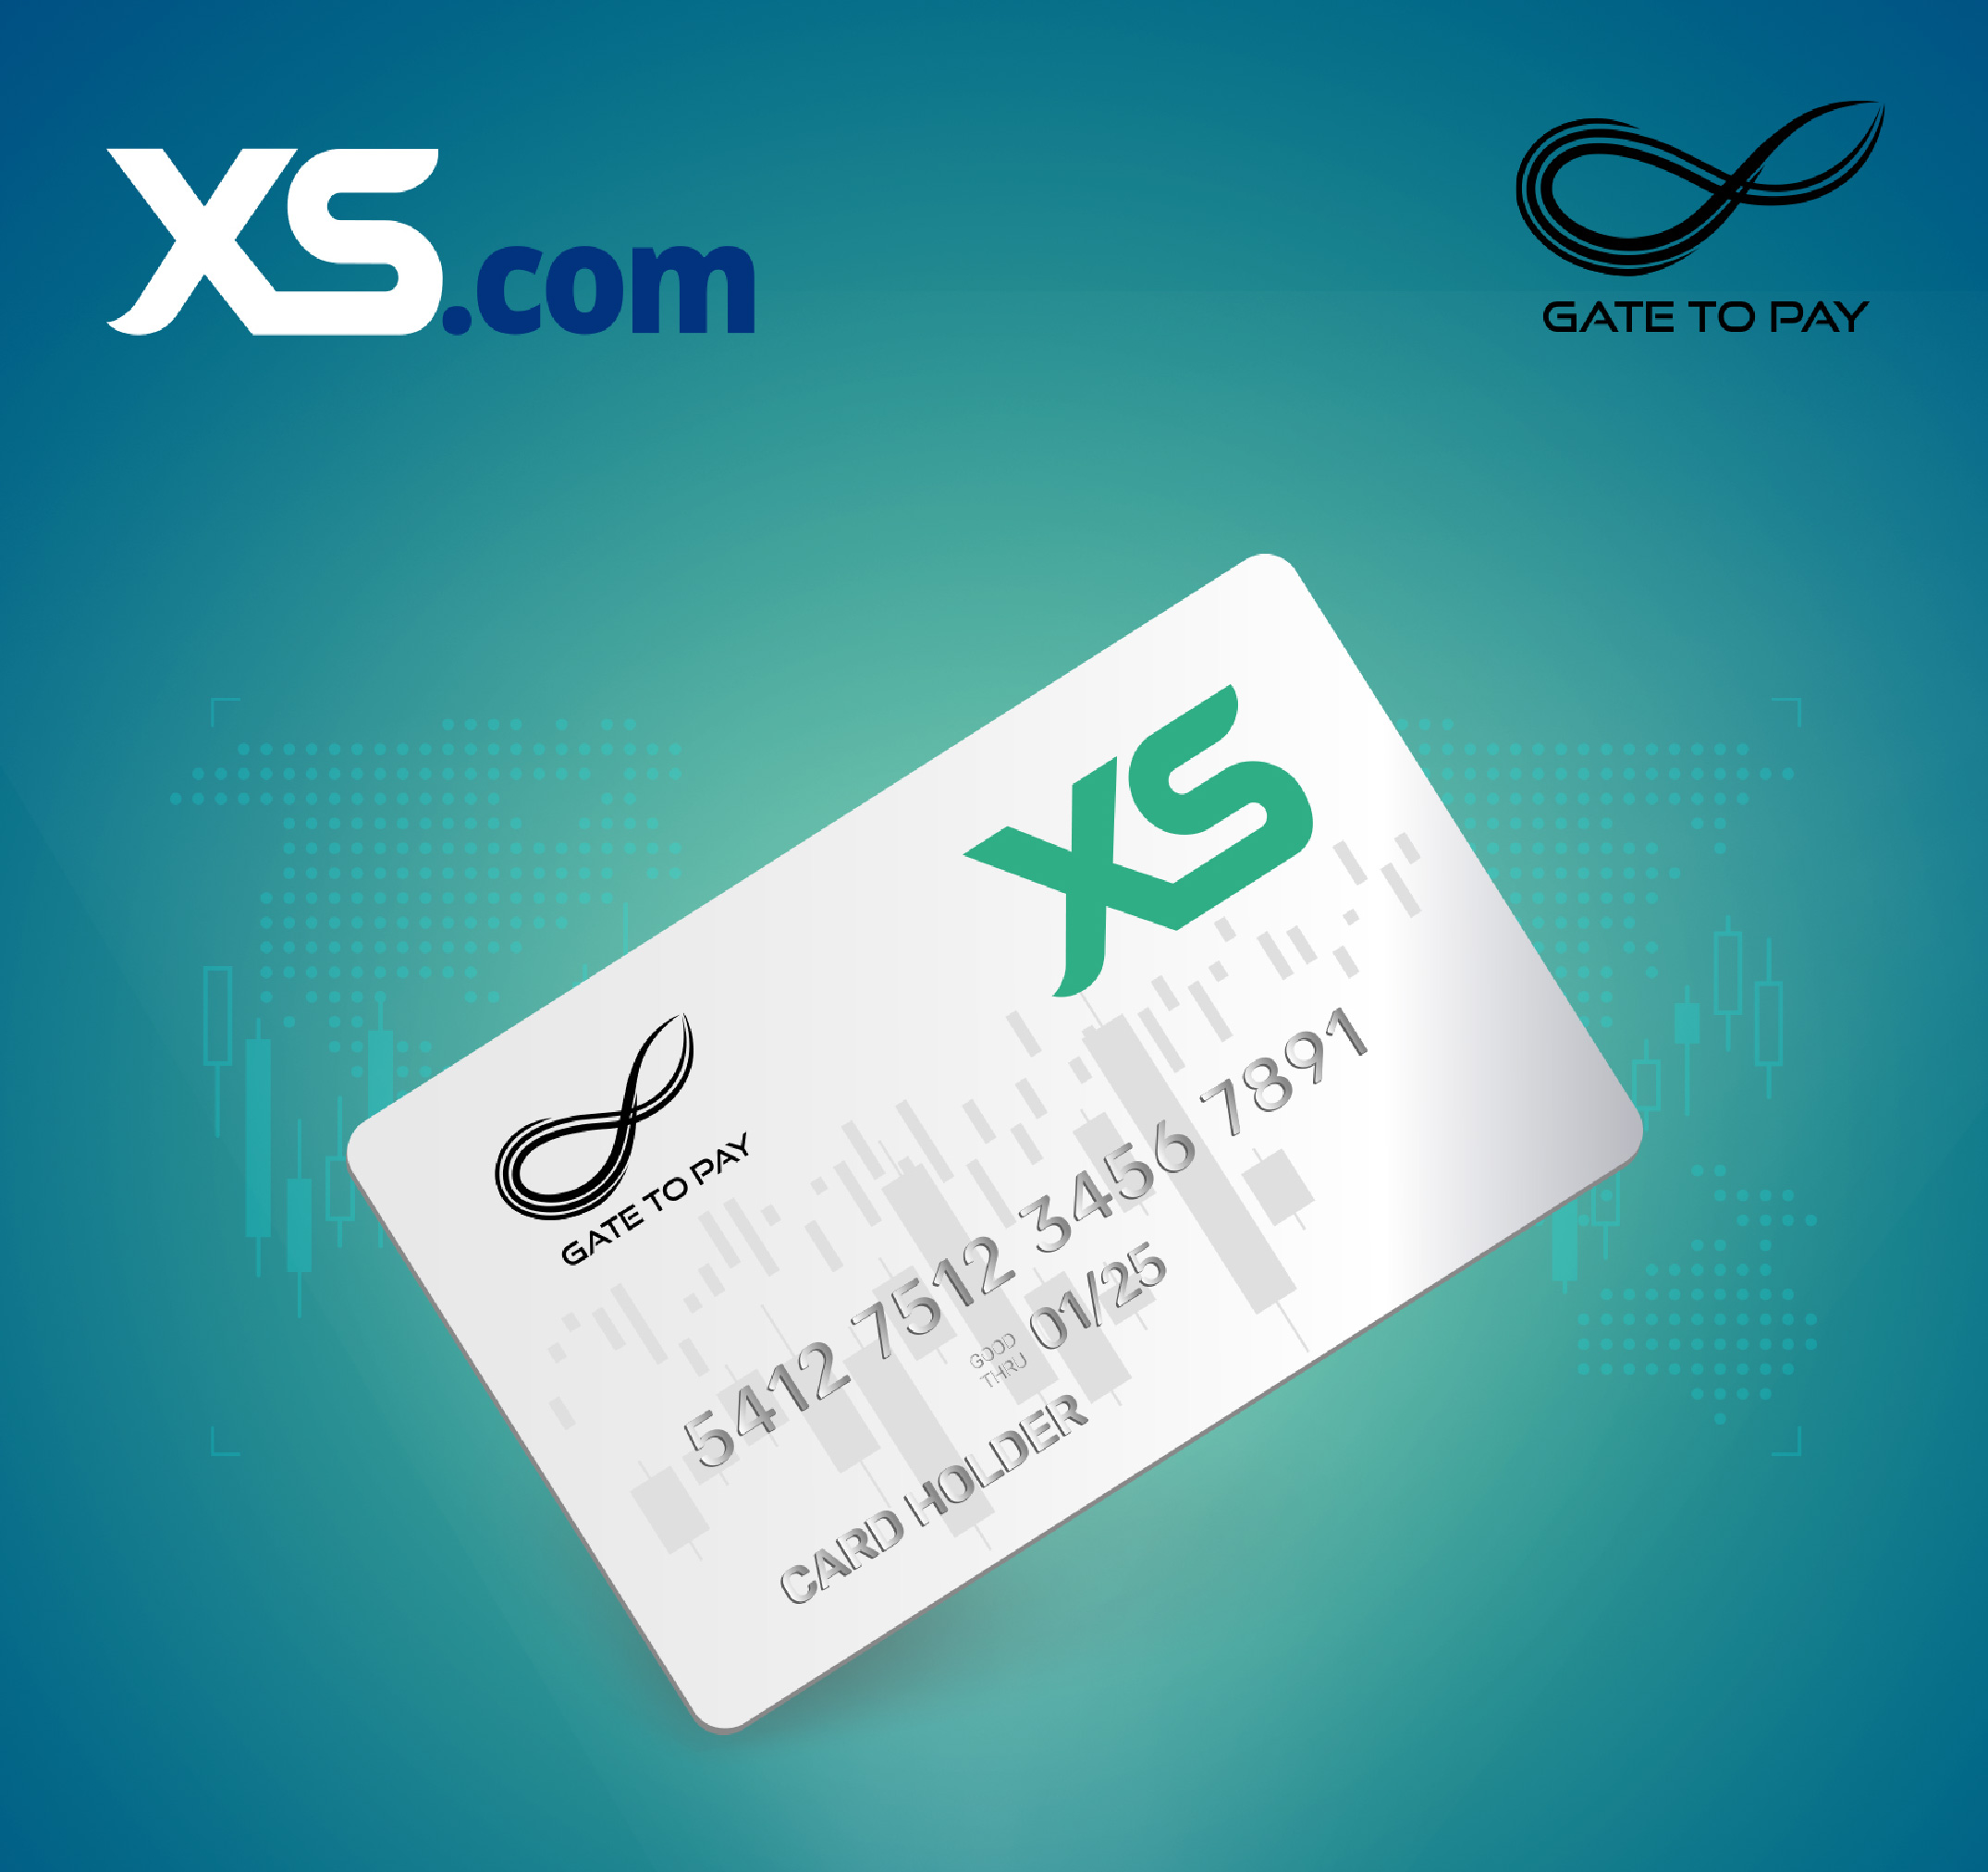 XS.com presenta la tarjeta prepagada XS Mastercard integrada con la aplicación móvil "XS Cards"